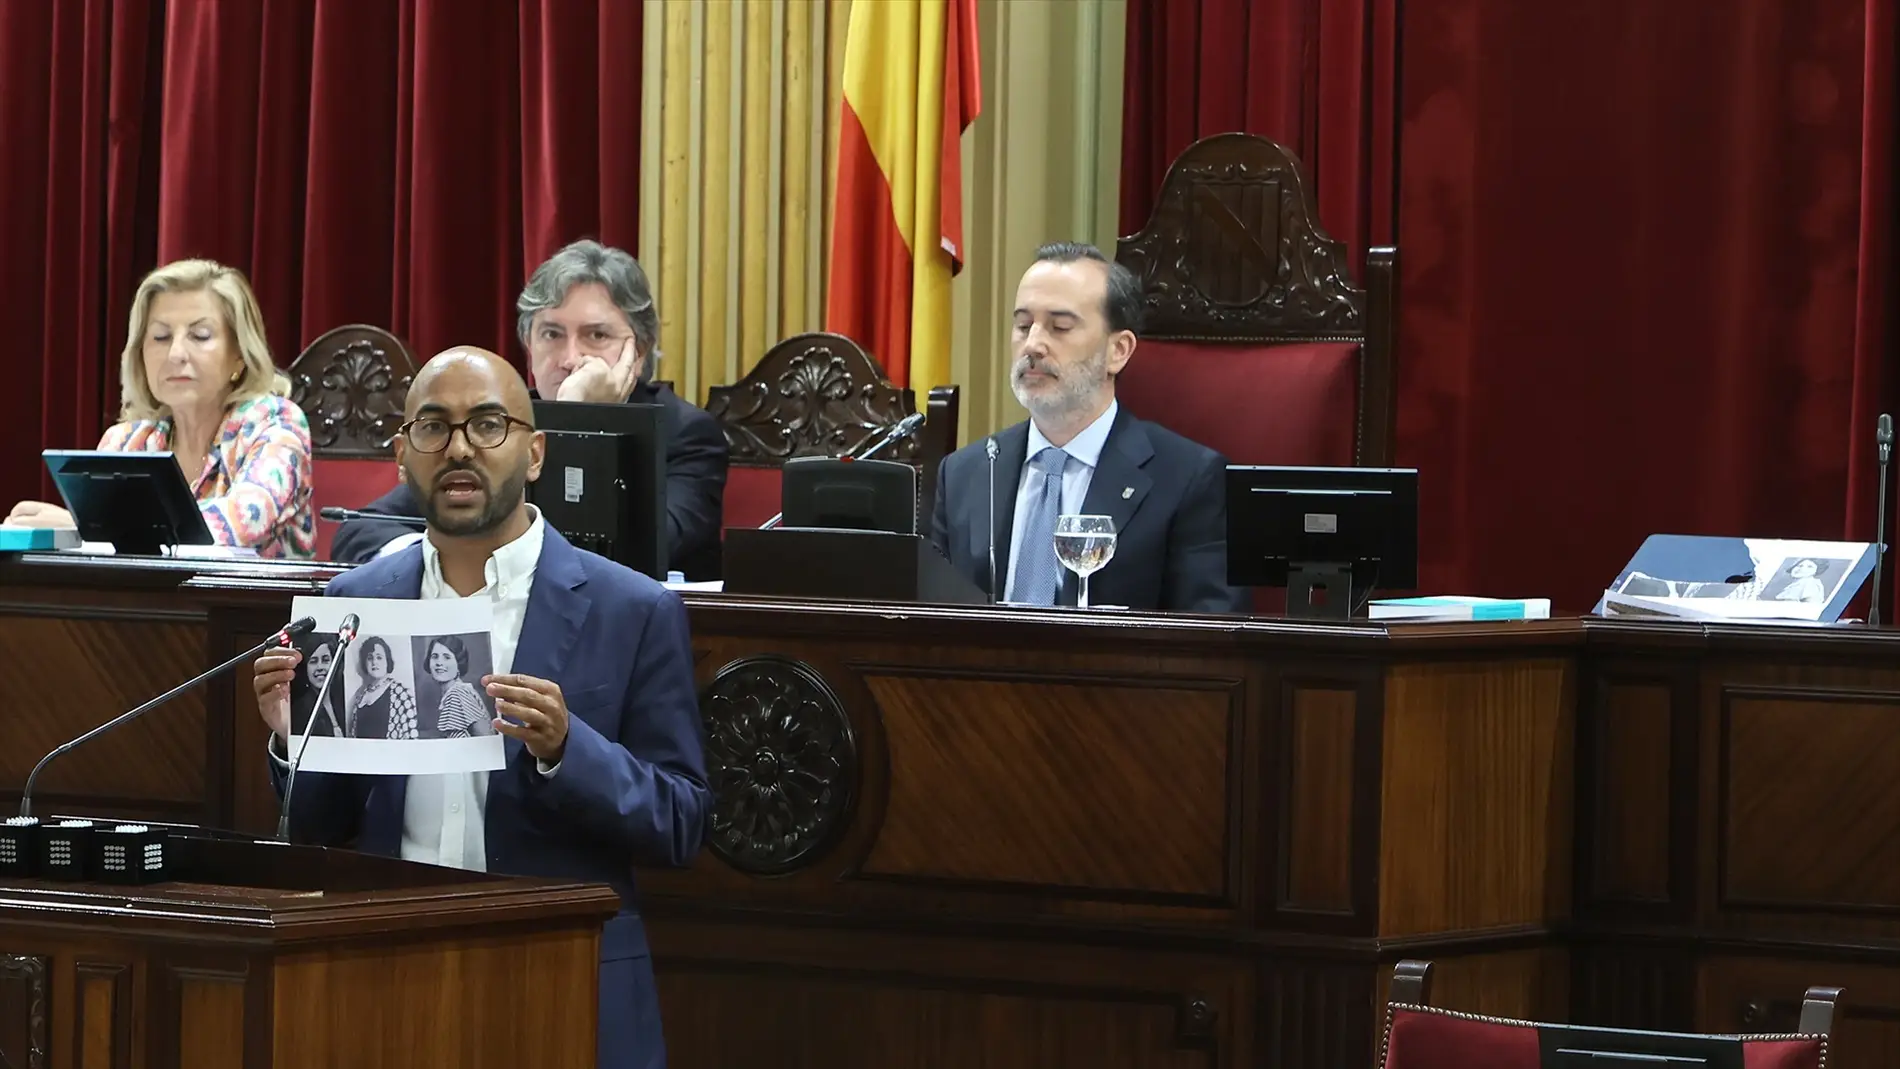 El diputado del PSOE Omar Lamin interviene durante una sesión plenaria, en el Parlament balear, mostrando las imágenes que Gabriel Le Senne había pedido retirar